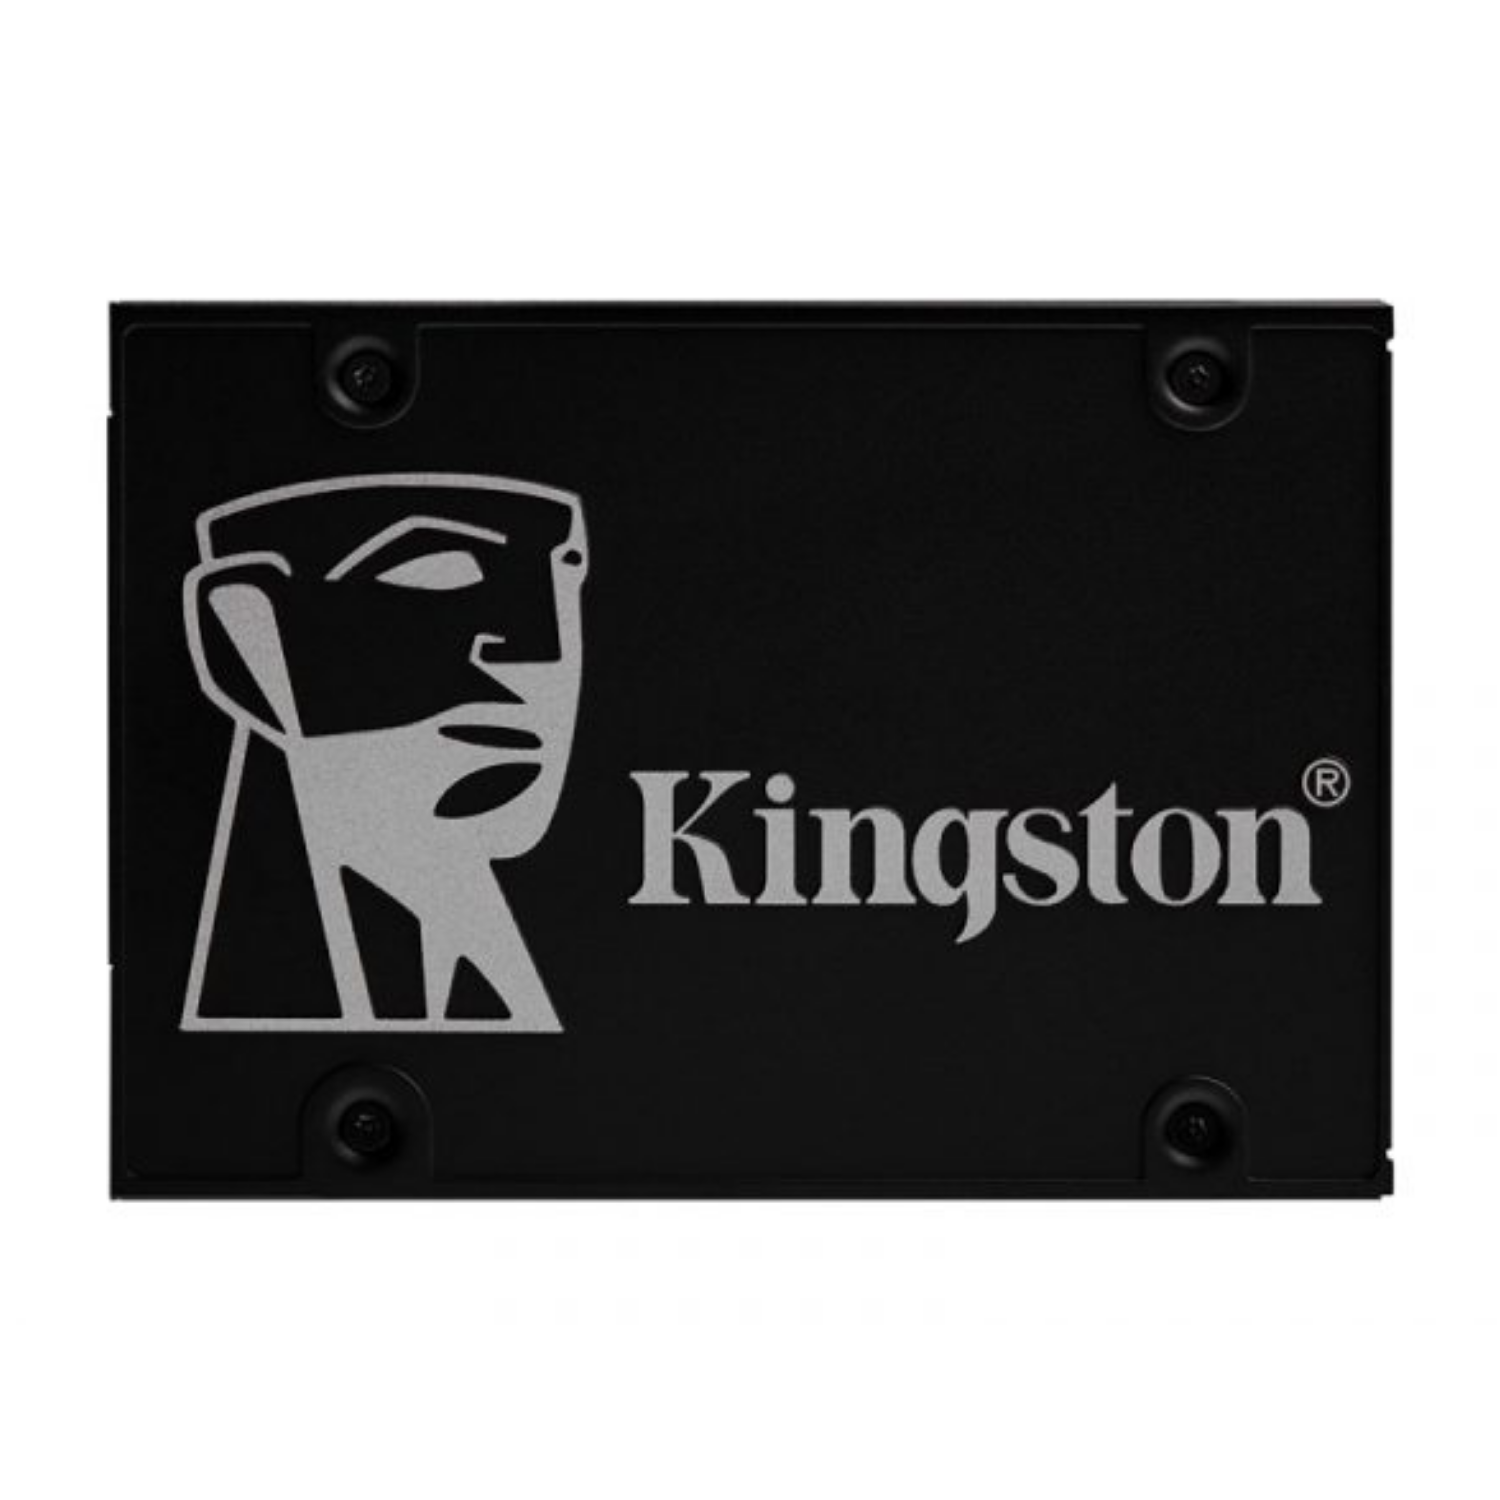 Disco Duro Solido Kingston KC600 256GB 2.5 Sata (SKC600/256G)